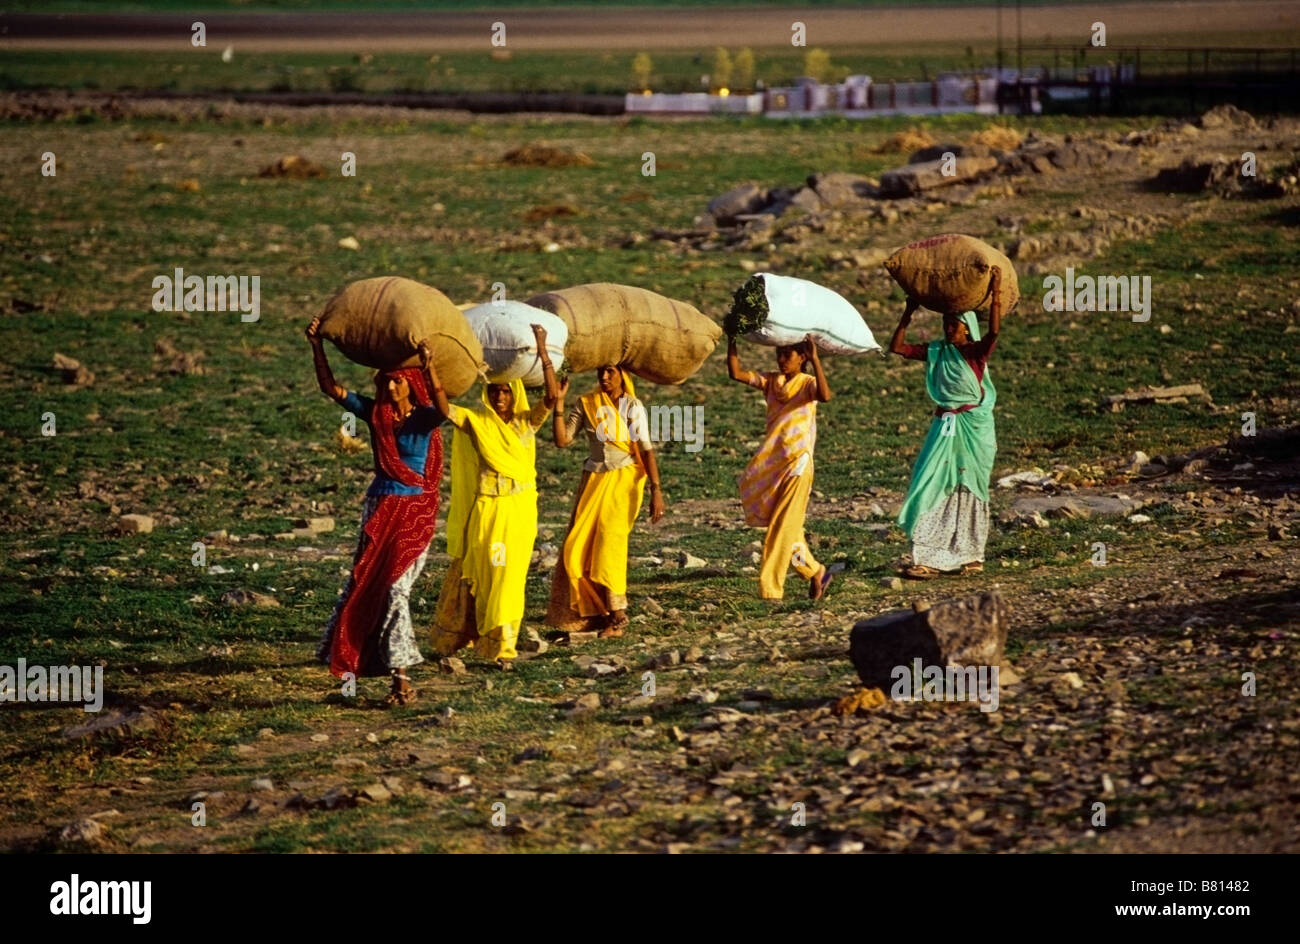 Vier indische Frauen in bunten Saris Säcke frisch gemähtes Gras für das Vieh auf ihren Köpfen tragen Stockfoto